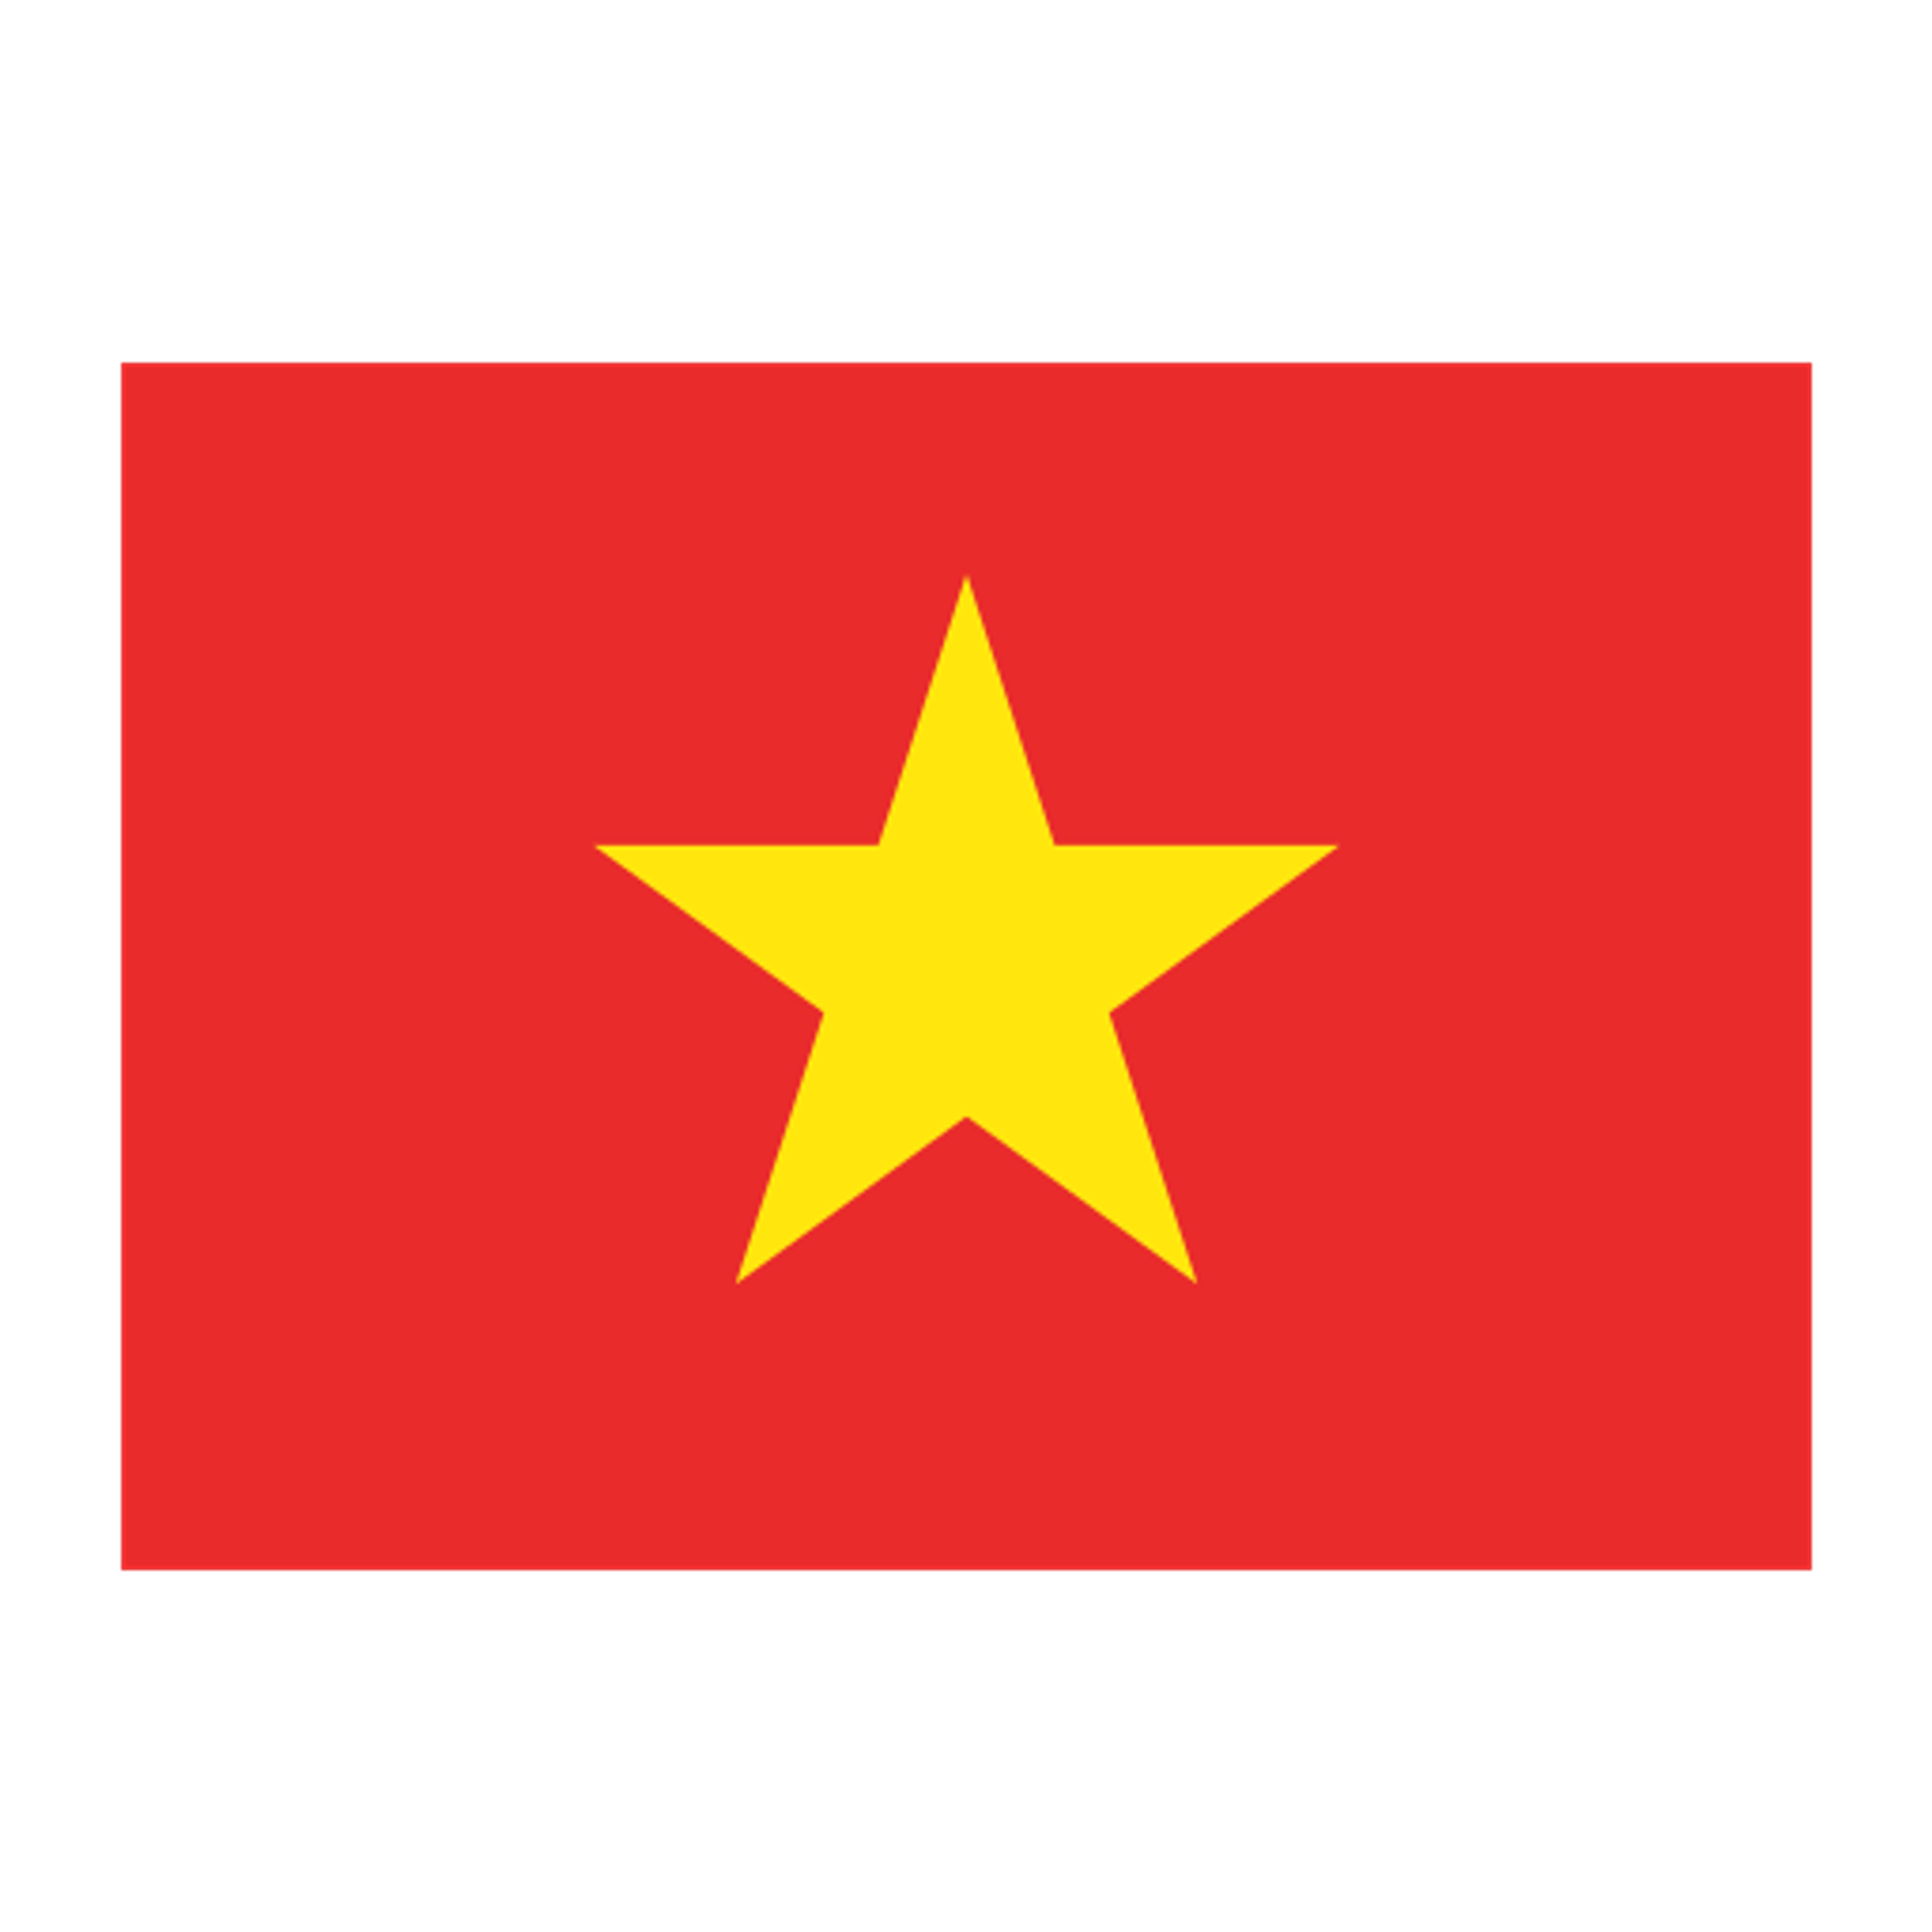 Tên miền Việt Nam